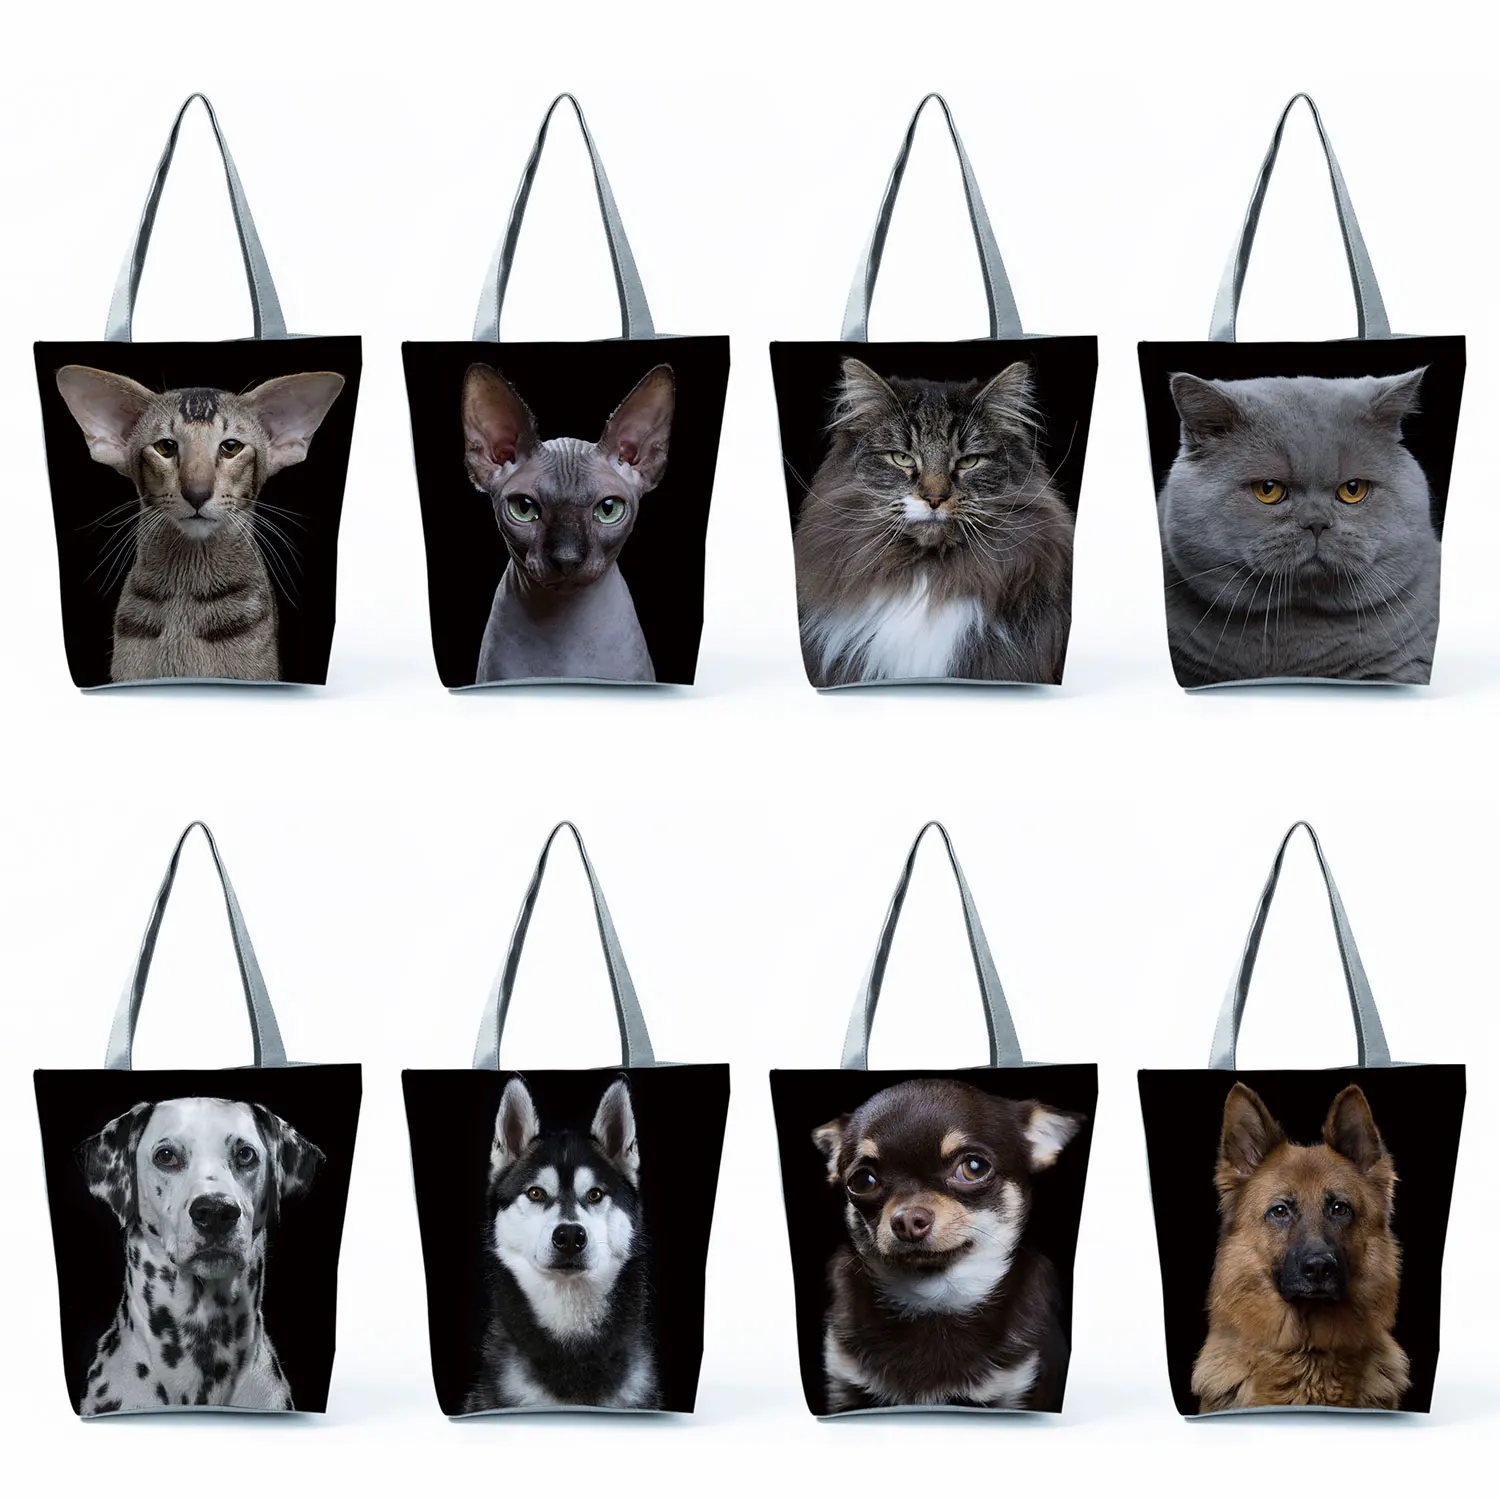 

Женская сумка с принтом кошки и собаки, черная сумка на плечо, вместительная сумка для покупок, Женская дорожная пляжная сумка, Прямая поставка